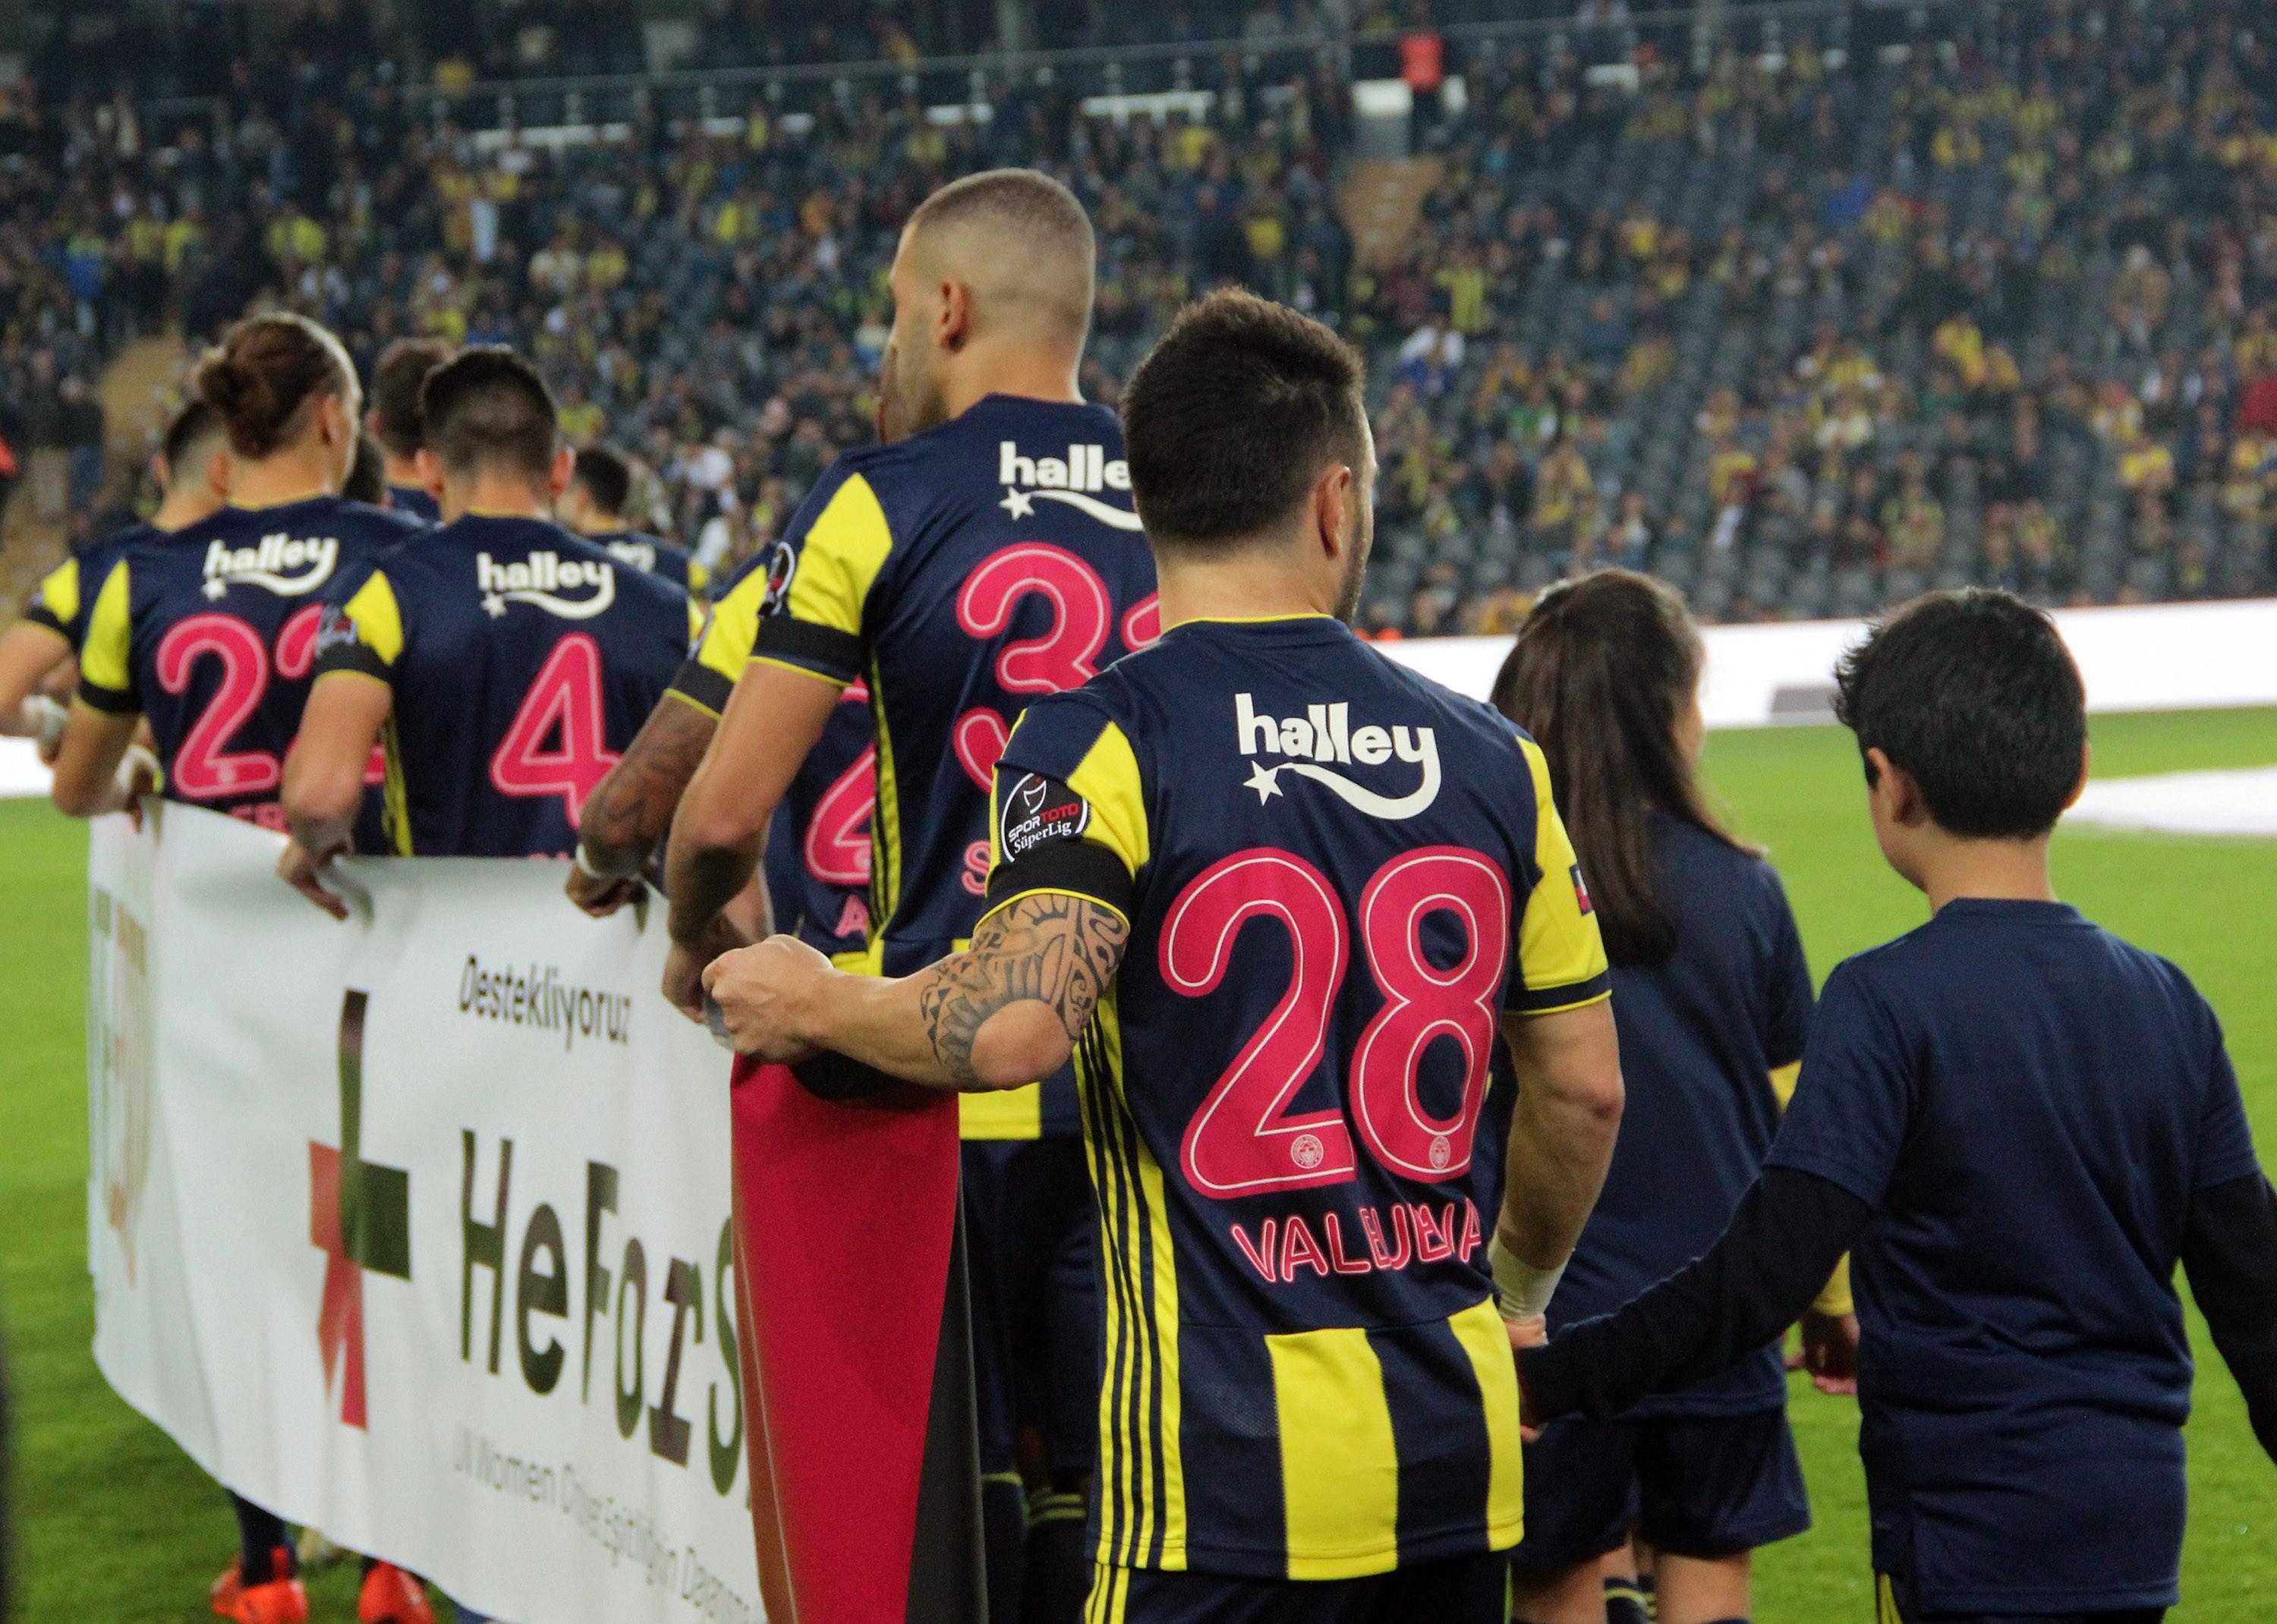 Fenerbahçe-Aytemiz Alanyaspor maç sonucu: 2-0